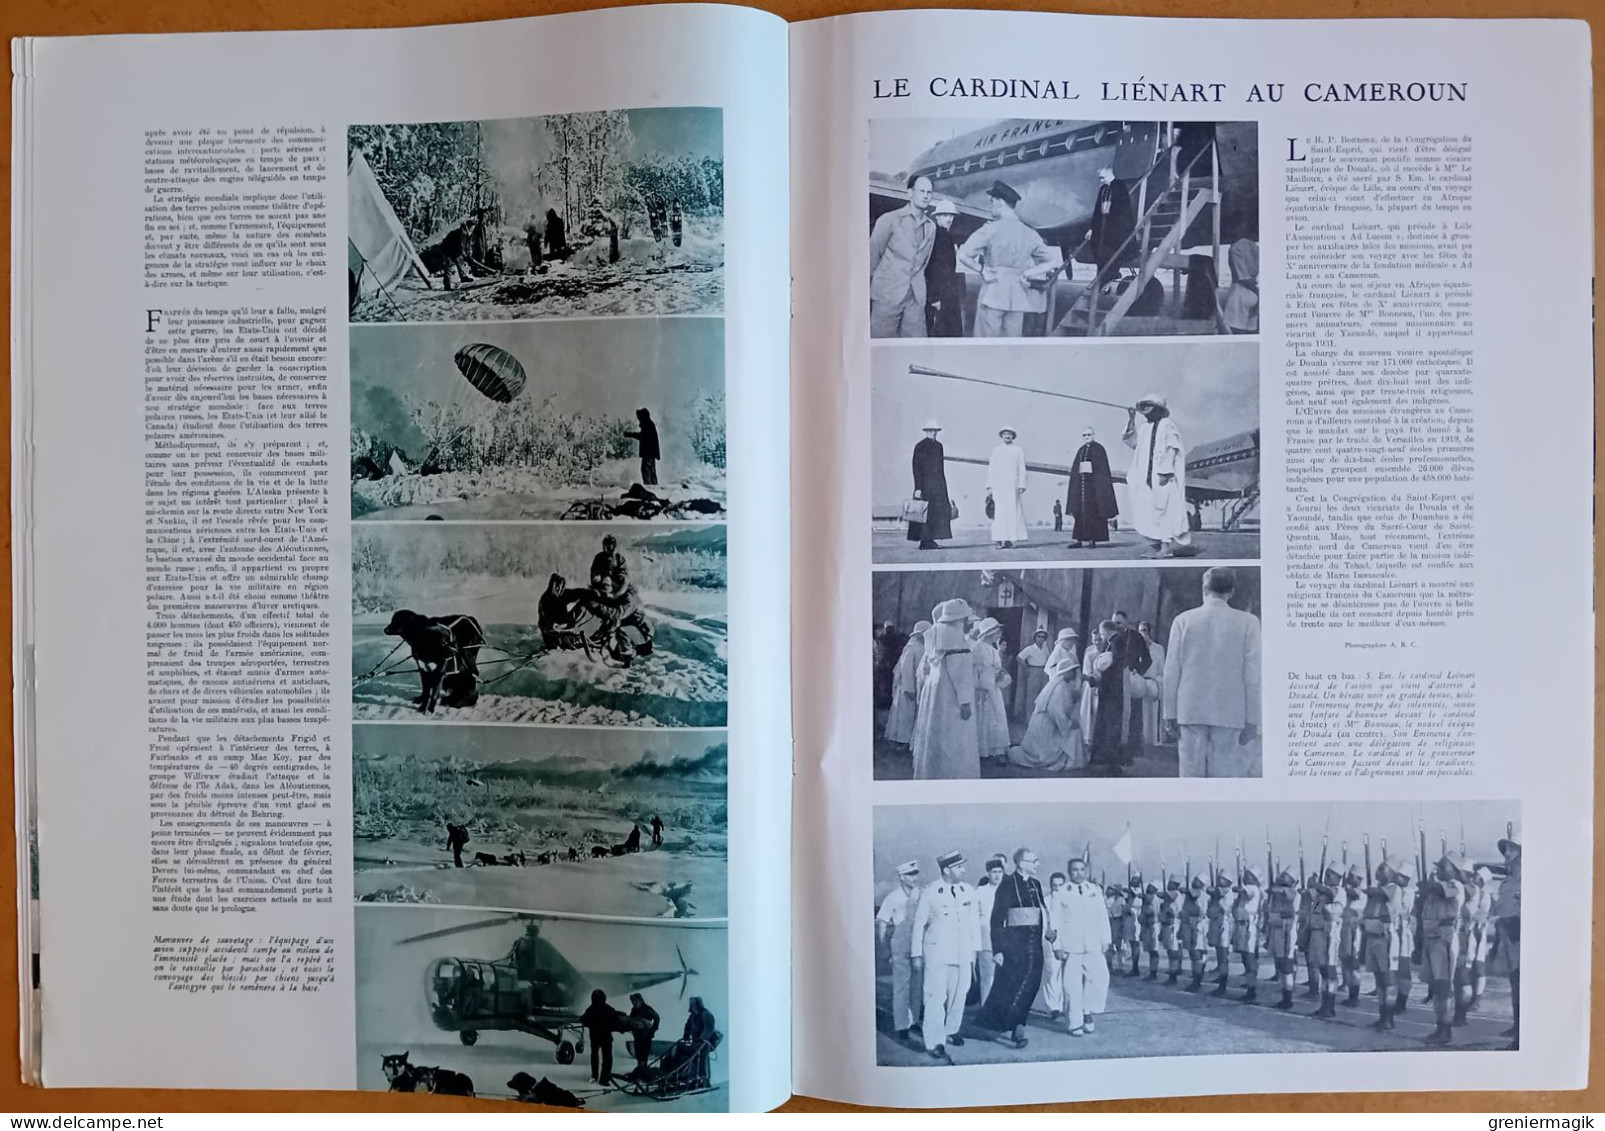 France Illustration N°75 08/03/1947 Indochine/Manoeuvres Arctiques de l'armée américaine/Iran/Tziganes d'Europe/Roumanie